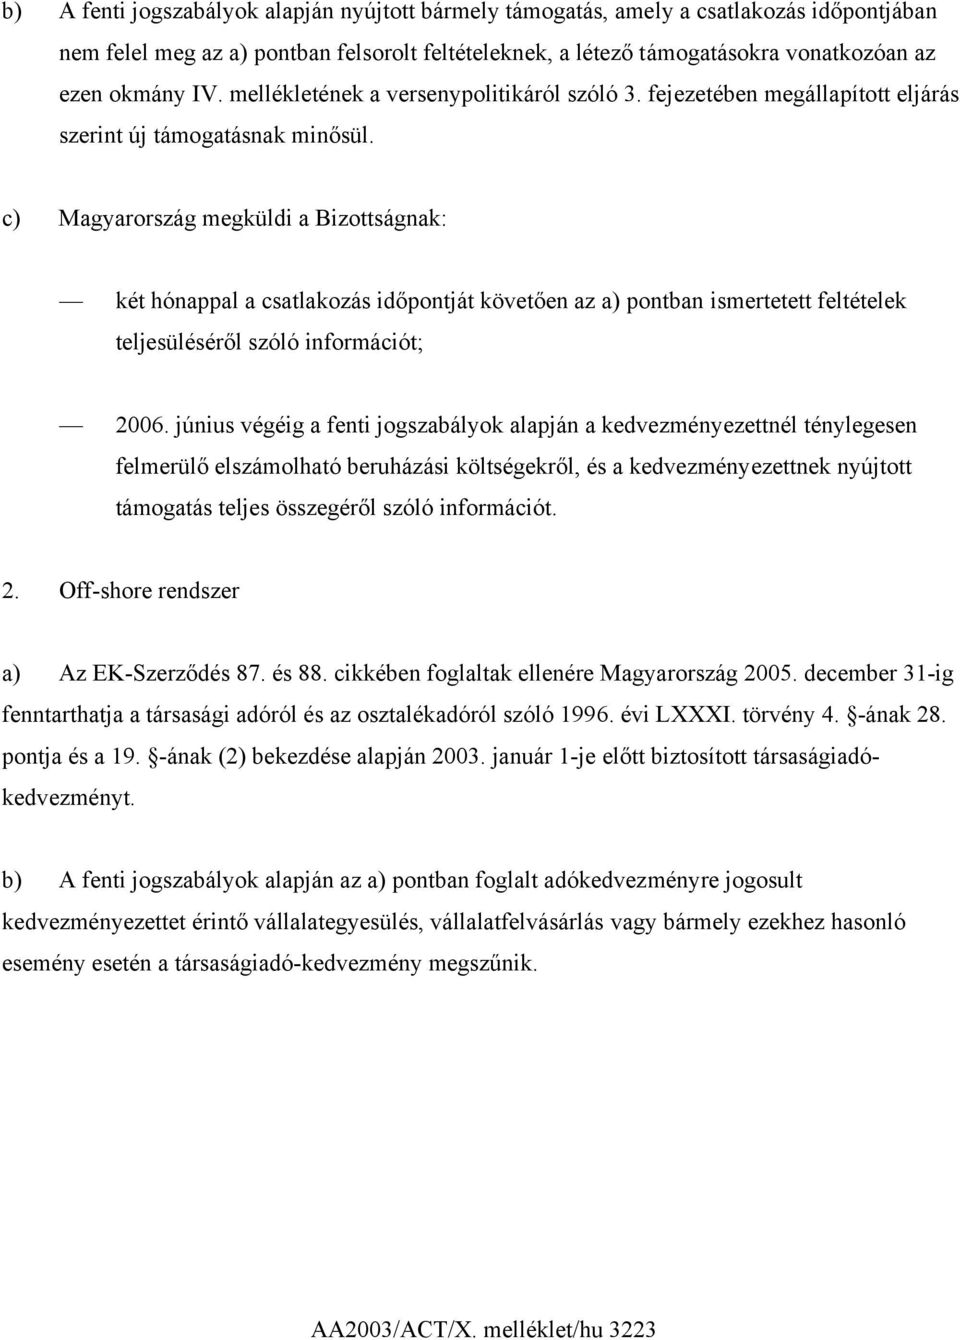 c) Magyarország megküldi a Bizottságnak: két hónappal a csatlakozás időpontját követően az a) pontban ismertetett feltételek teljesüléséről szóló információt; 2006.